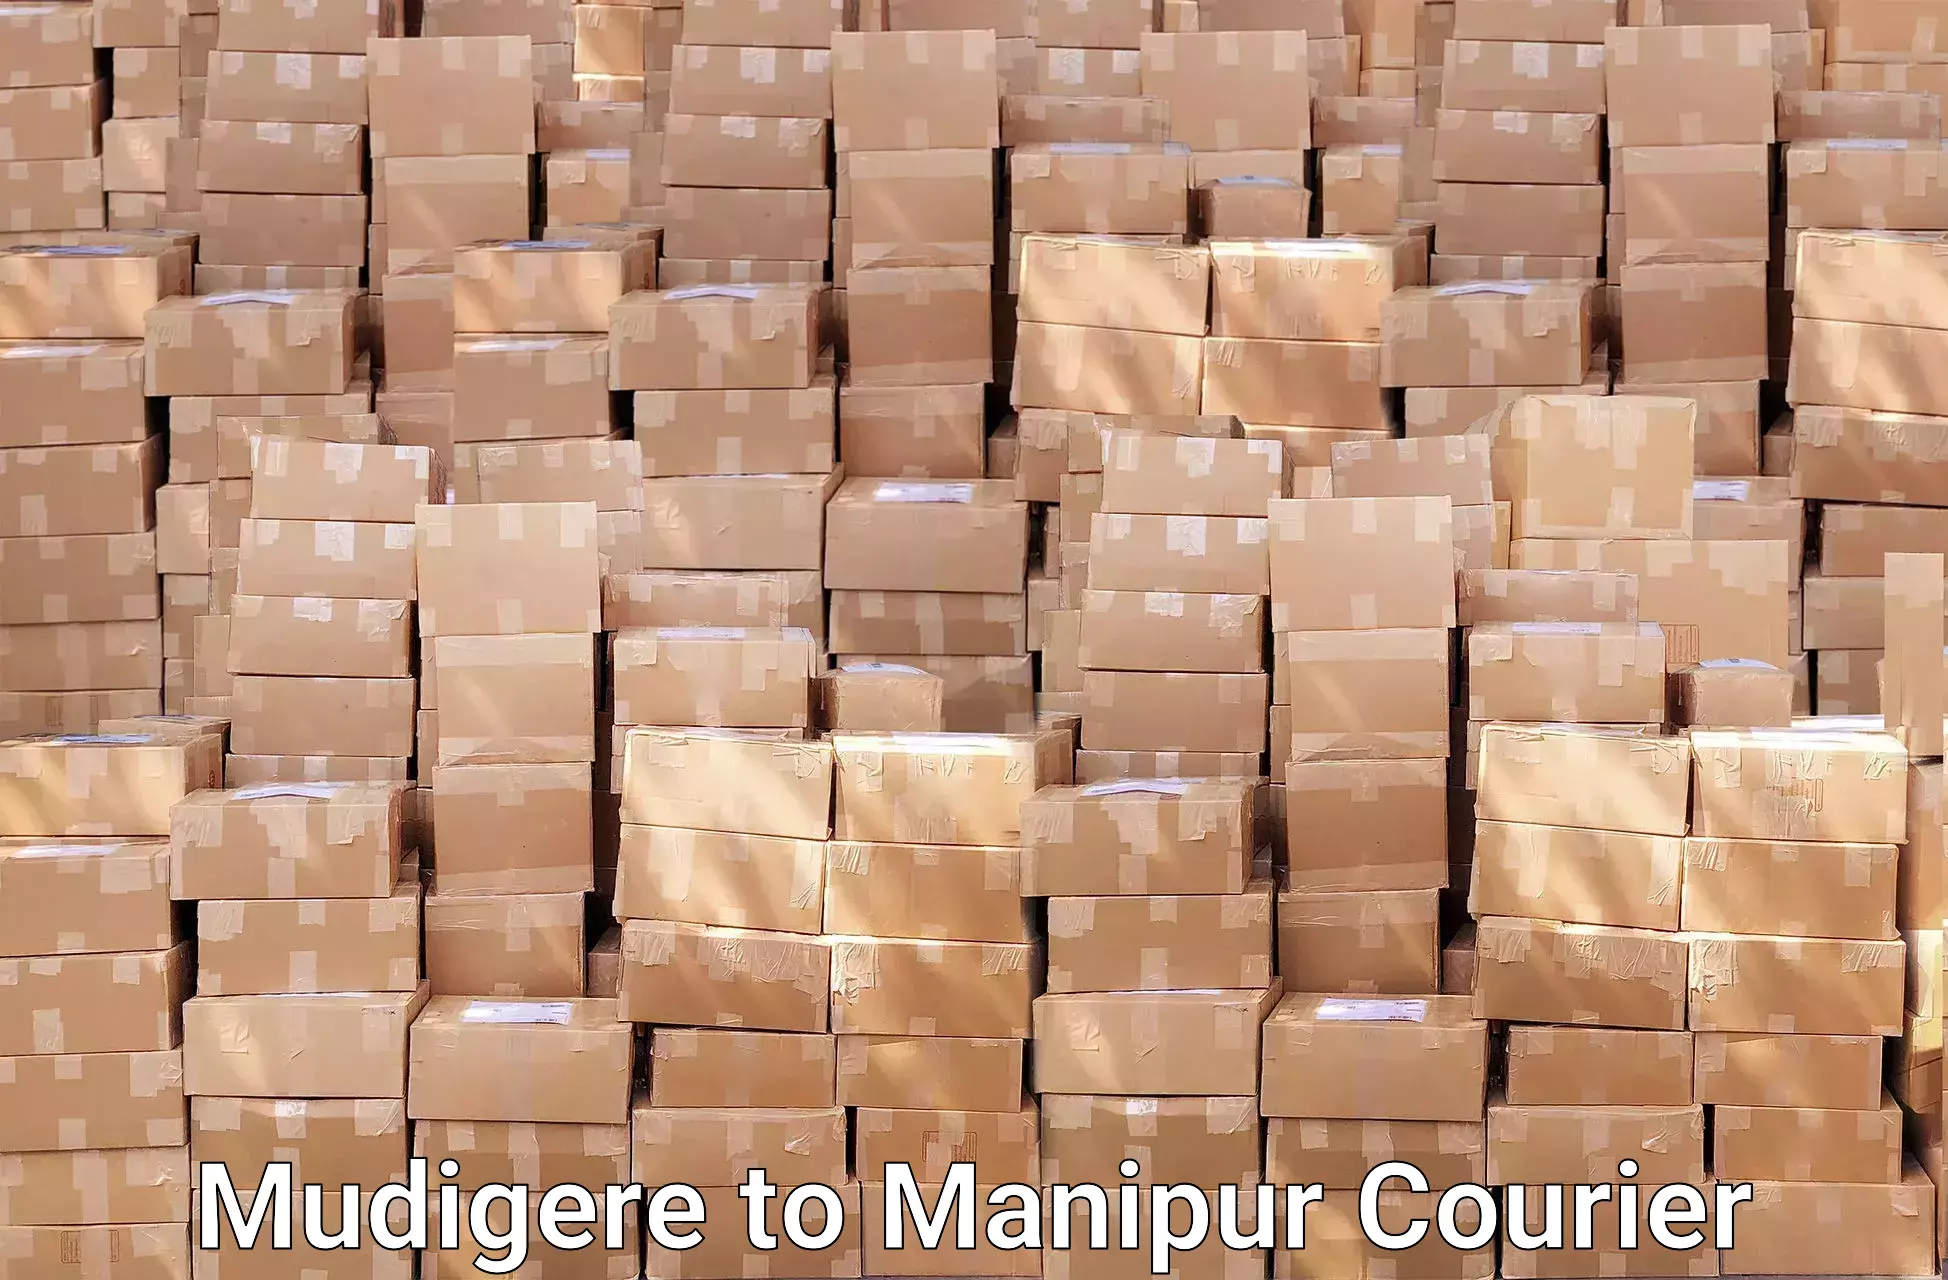 Furniture moving experts Mudigere to Manipur